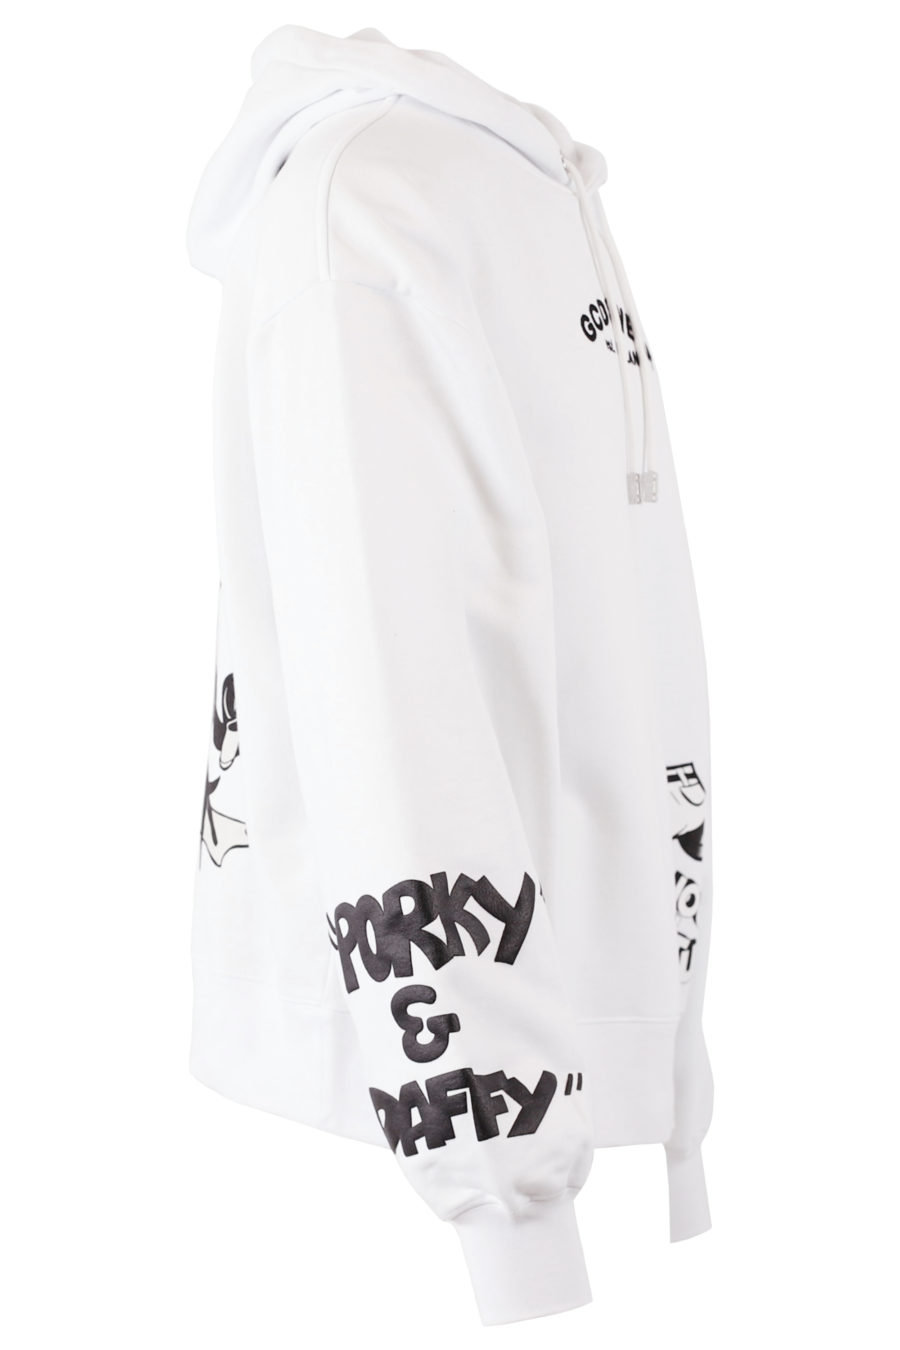 Weißes Kapuzensweatshirt mit Looney Tunes Grafikdruck - IMG 7673 copy